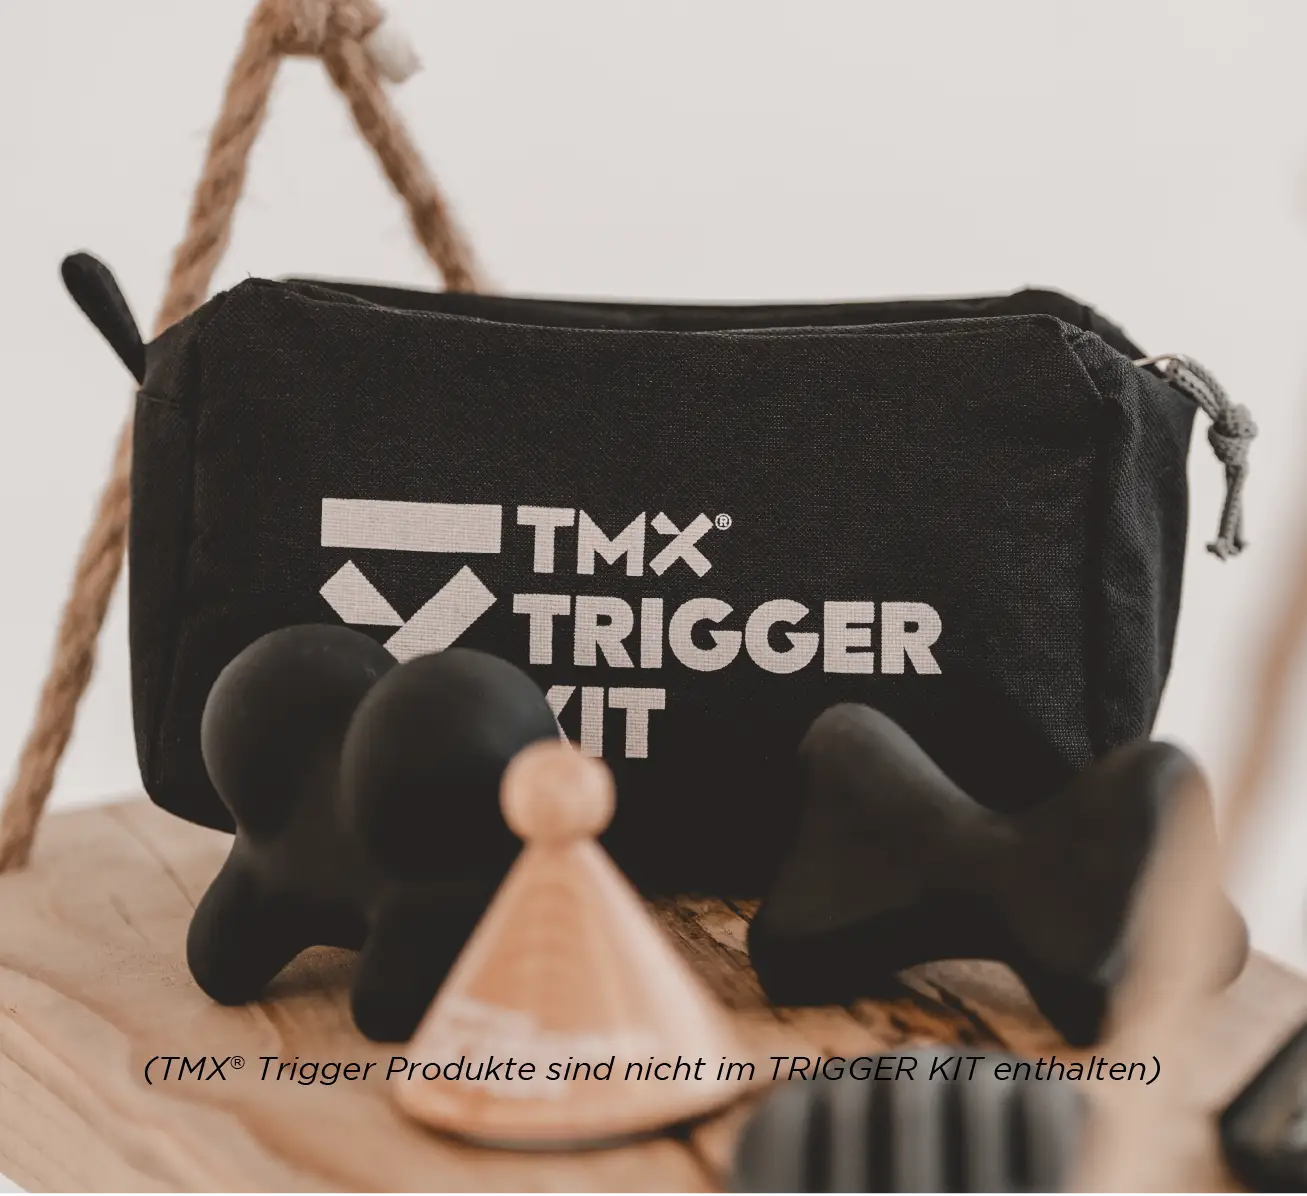 TMX TRIGGER KIT - mit TMX Produkten Mood Bild 1